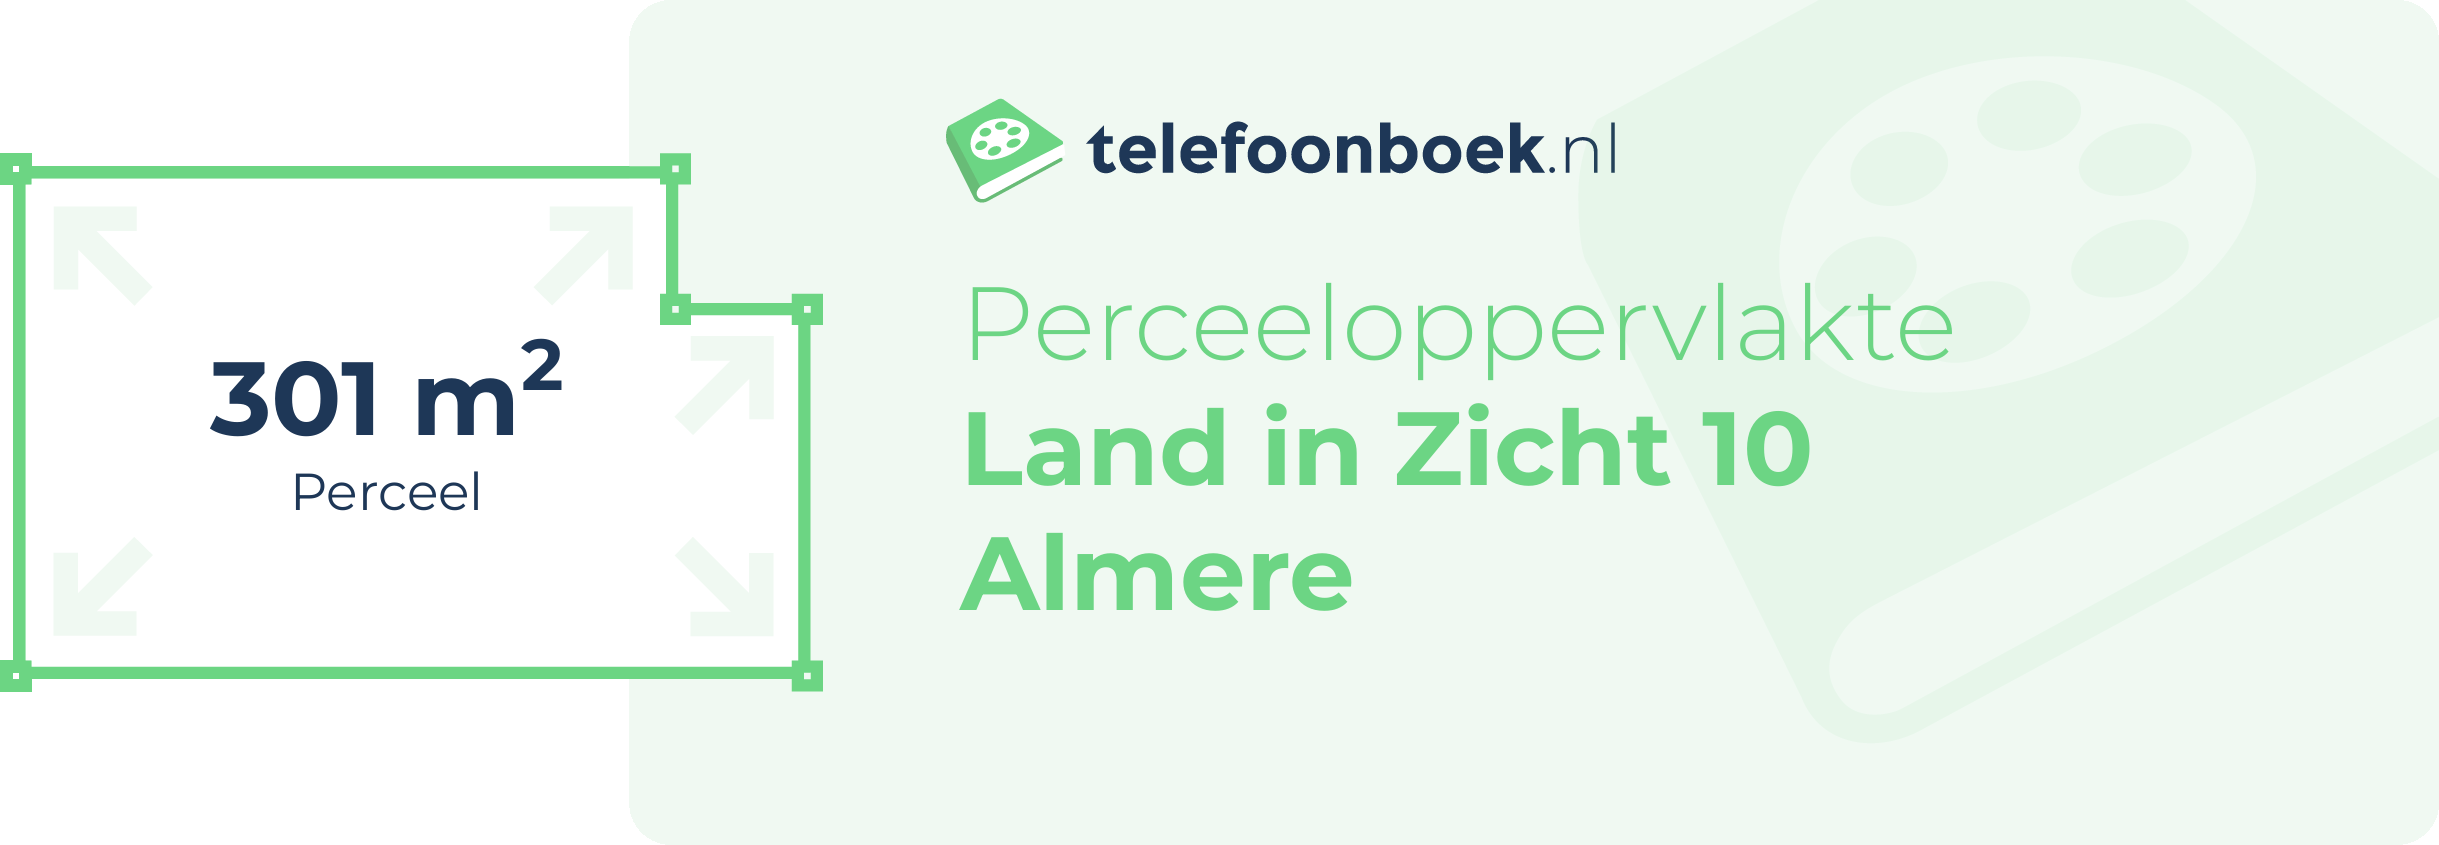 Perceeloppervlakte Land In Zicht 10 Almere